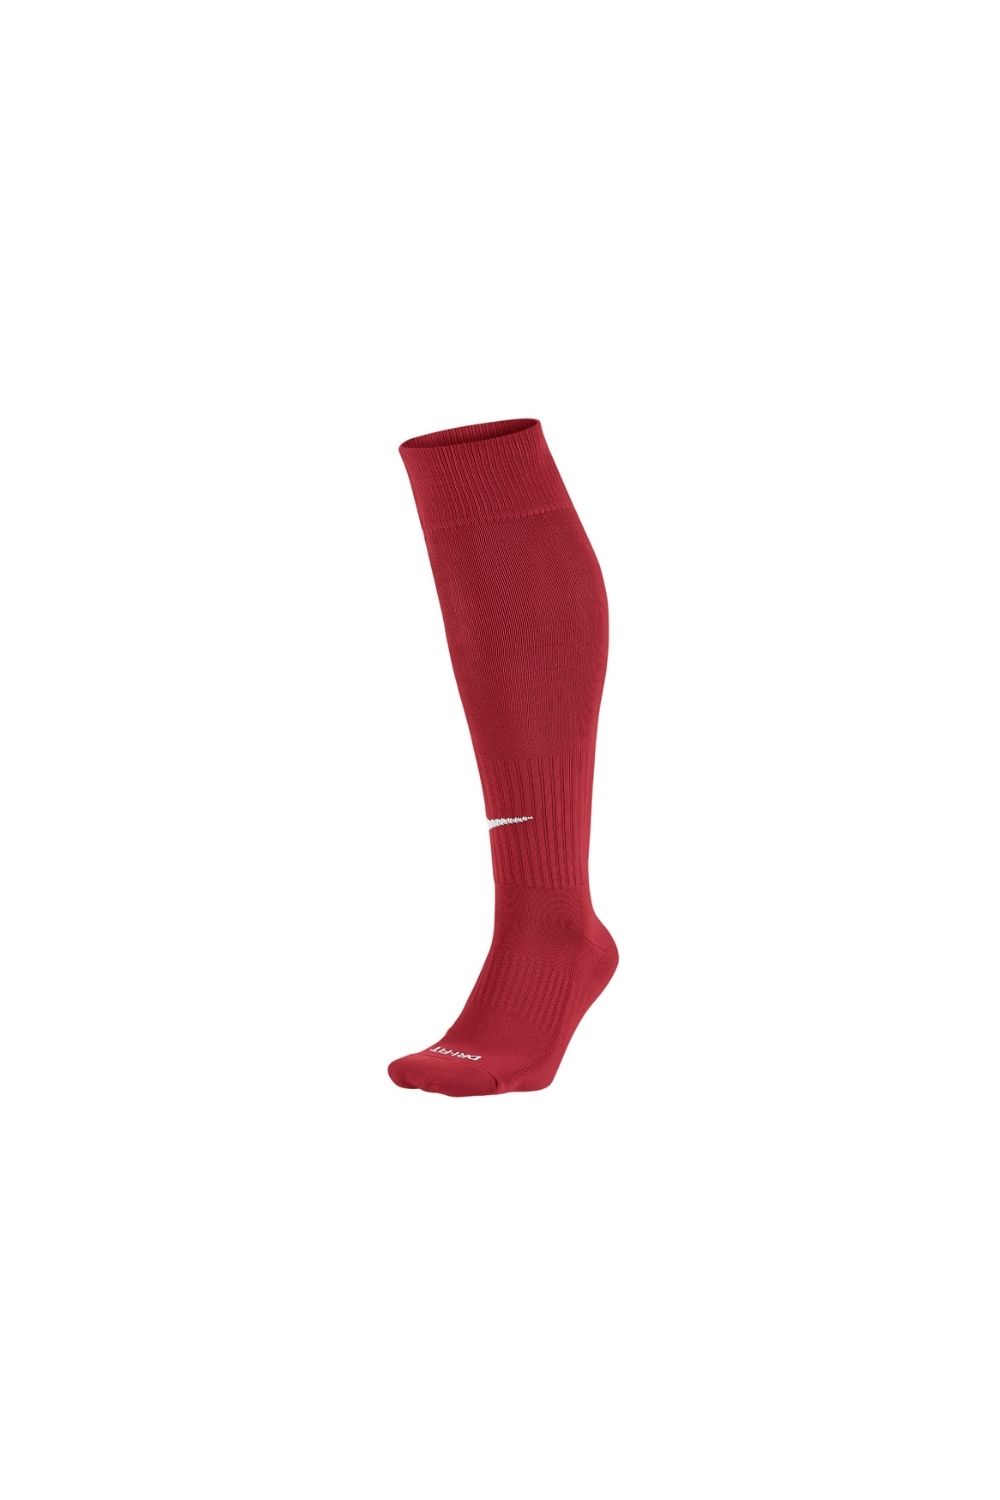 NIKE - Ανδρικές κάλτσες football NIKE κόκκινες